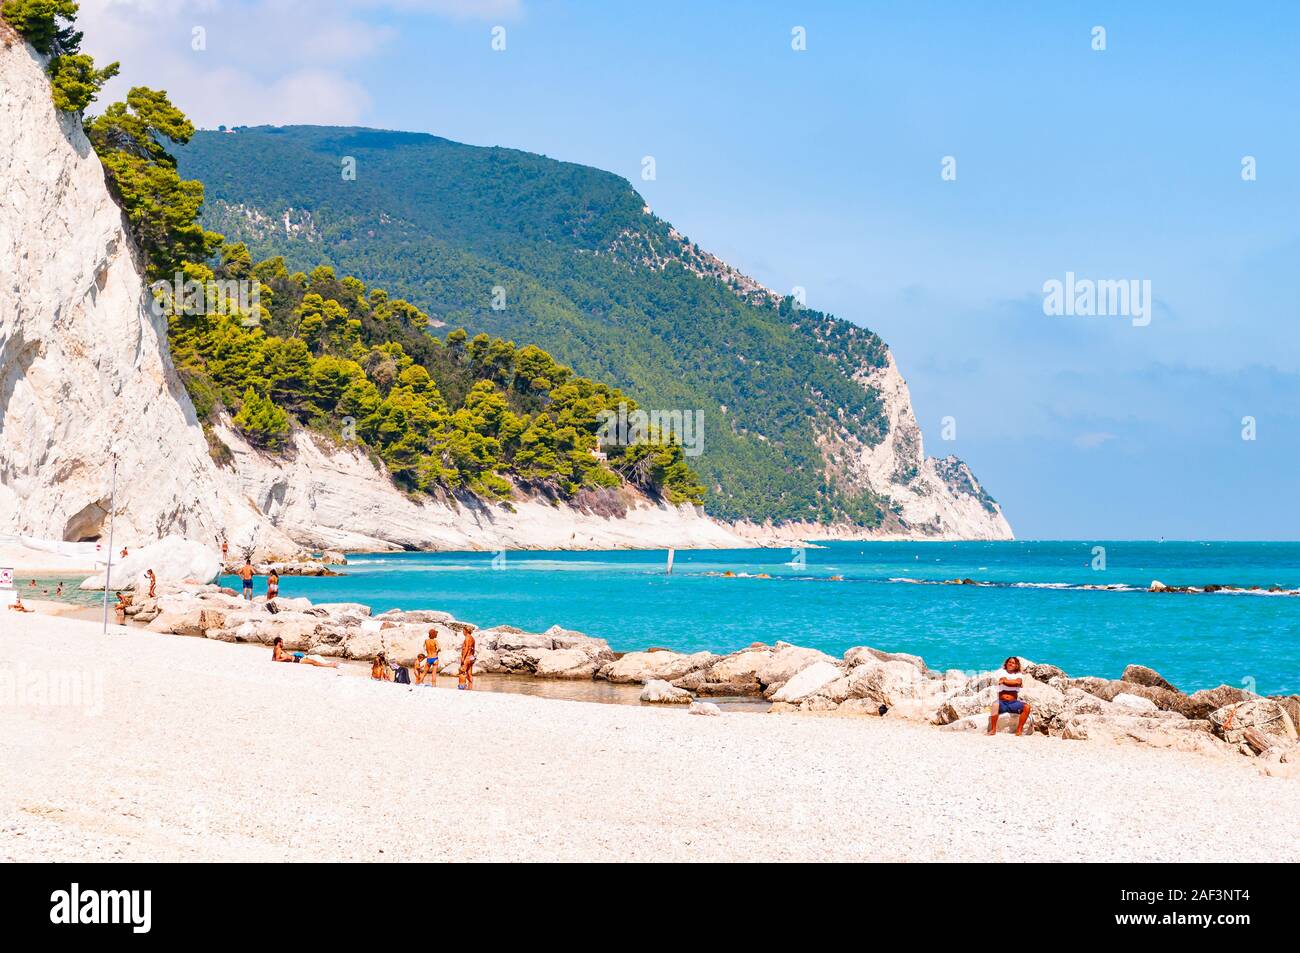 Spiaggia del Frate, Numana, Ancona, Marches, Italie - 11 septembre 2019 : Les gens se reposer sur une plage de galets blancs entourés de hautes blanc massif Banque D'Images